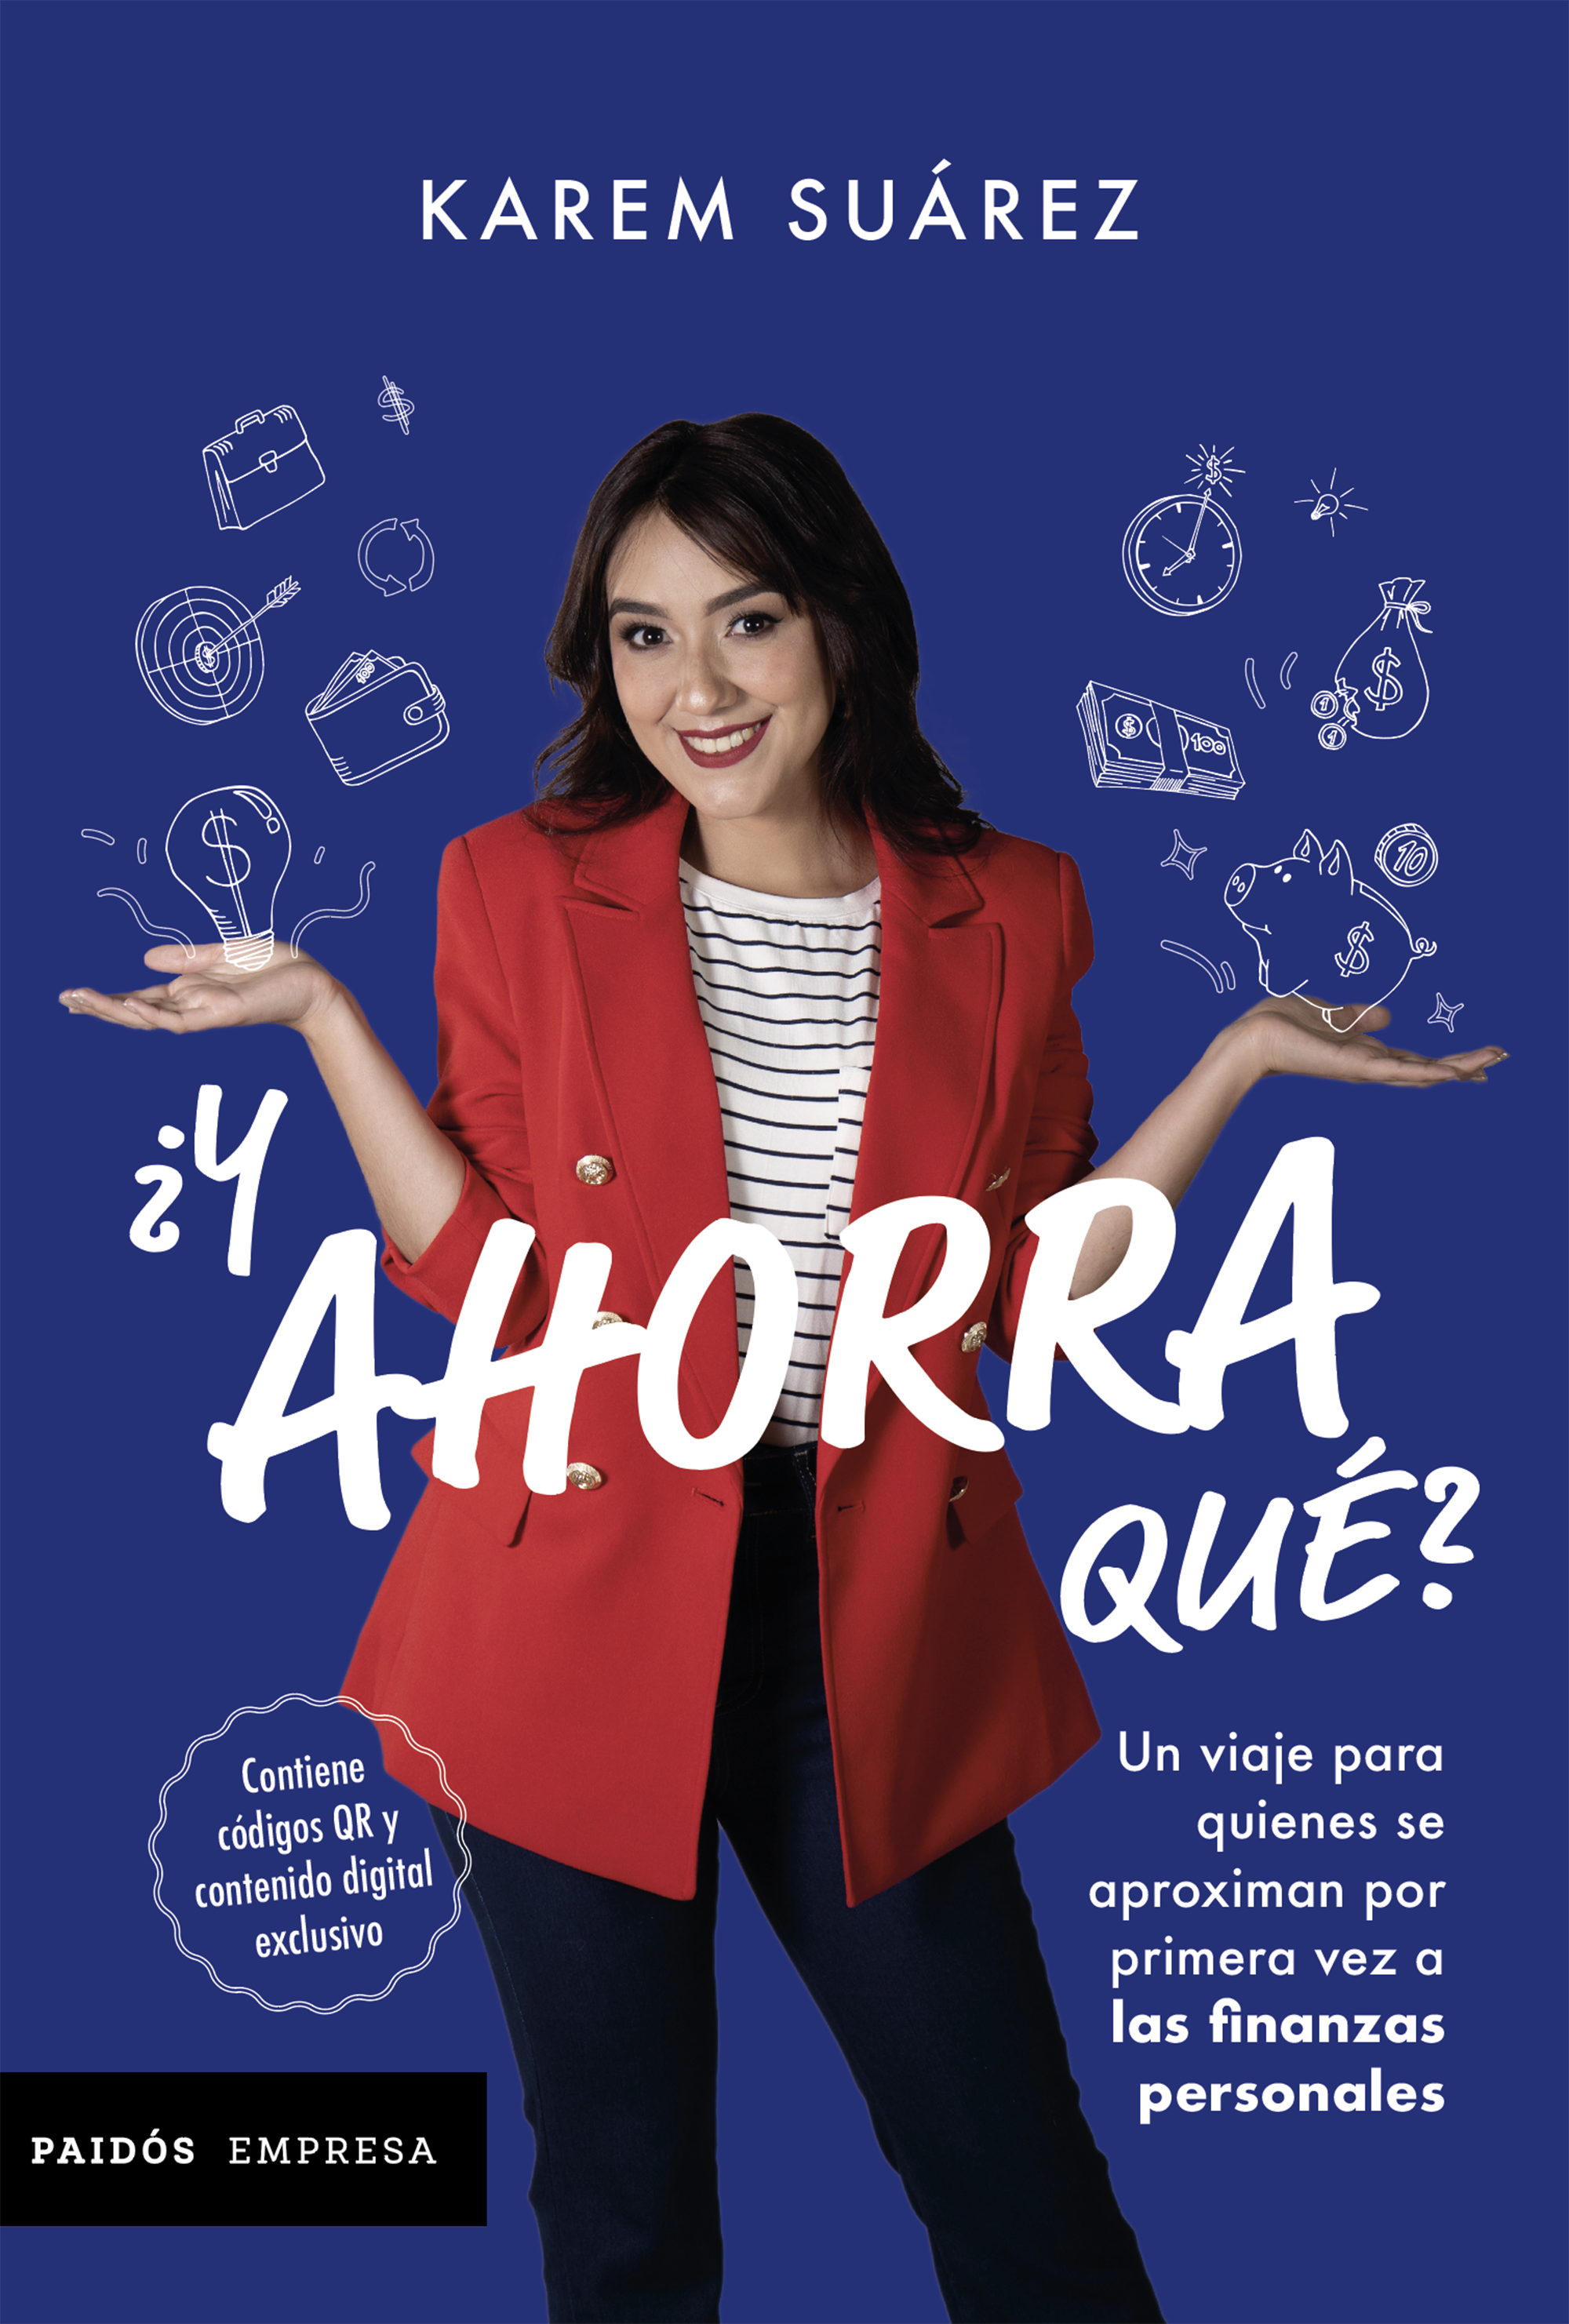 la portada del libro "¿Y qué ahorra?", de Karen Suárez.  (Cortesía de Planeta de Libros Co.)